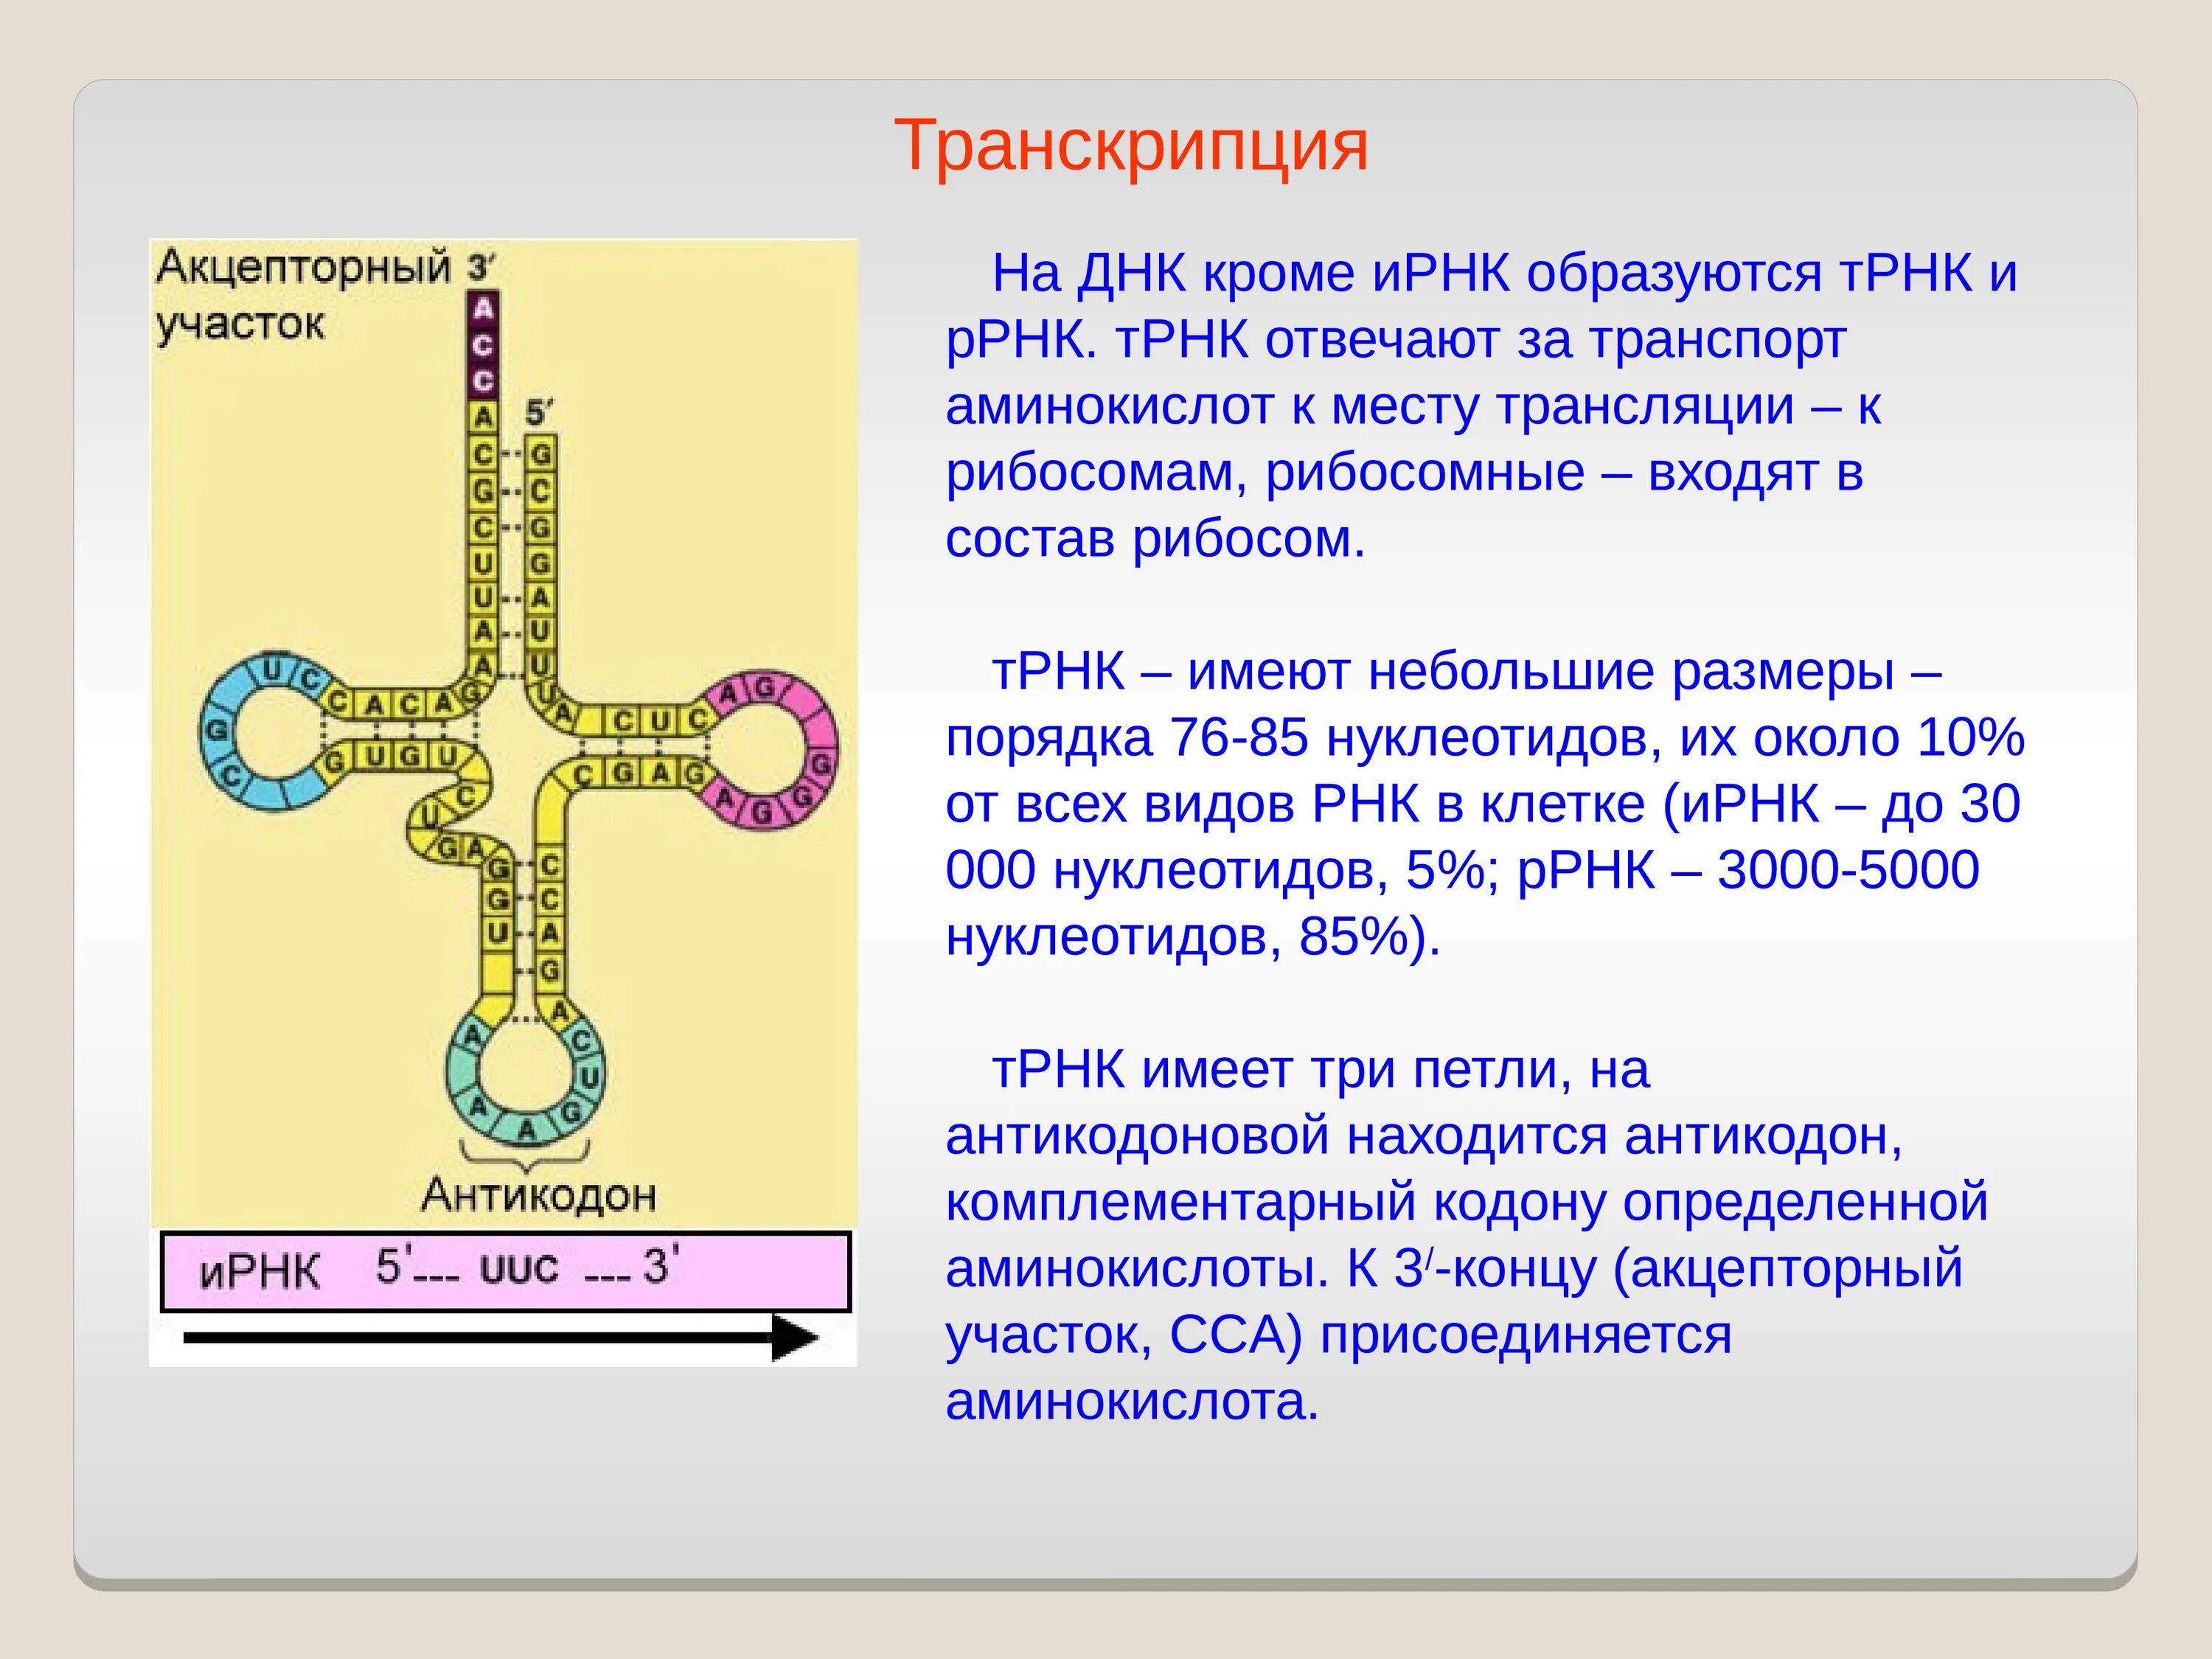 ДНК РНК ТРНК. ДНК В Т РНК. Строение ТРНК. ТРНК И ИРНК.